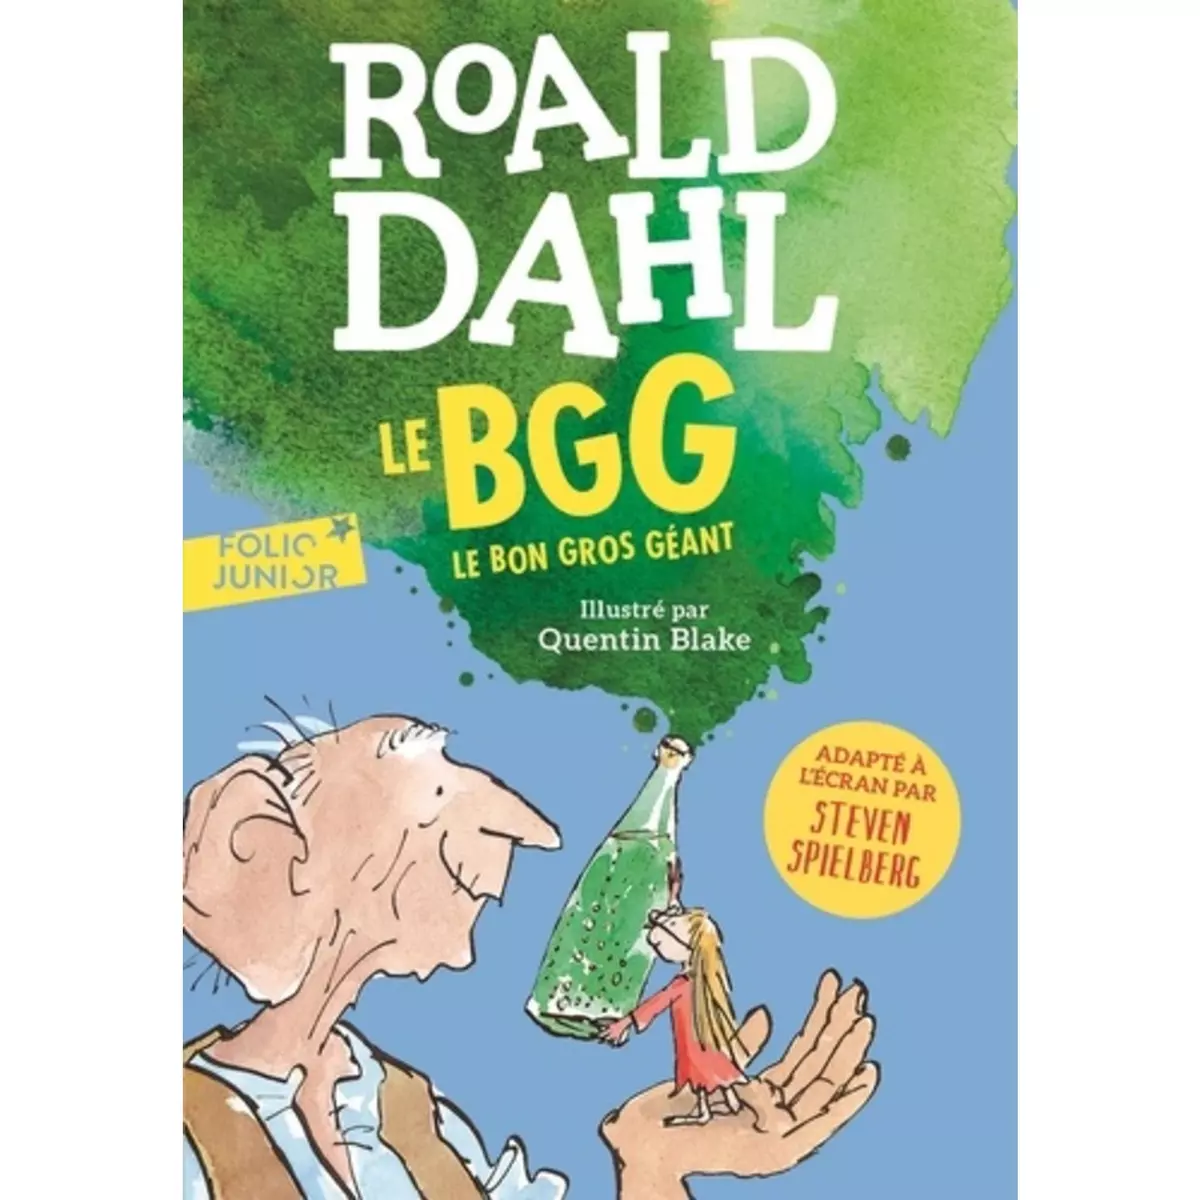  LE BGG. LE BON GROS GEANT, Dahl Roald